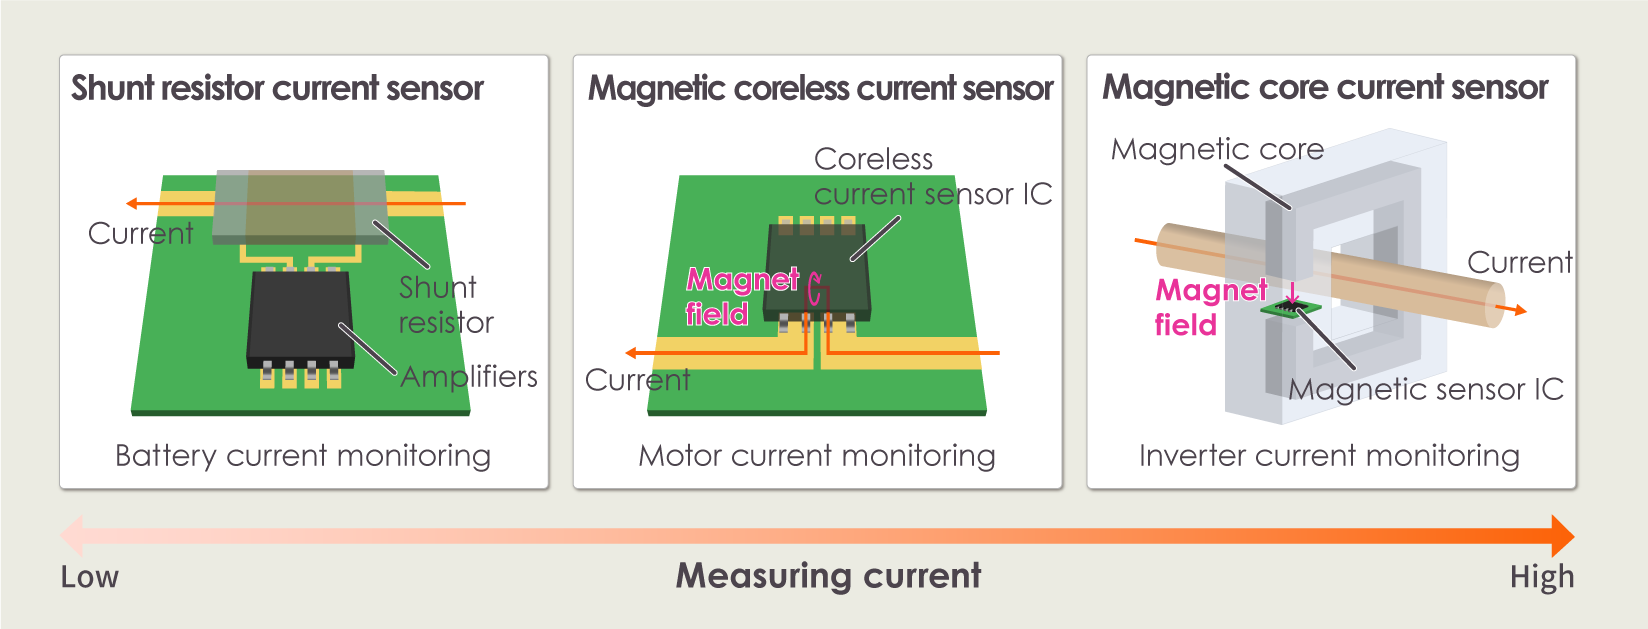 Current sensor types and characteristics